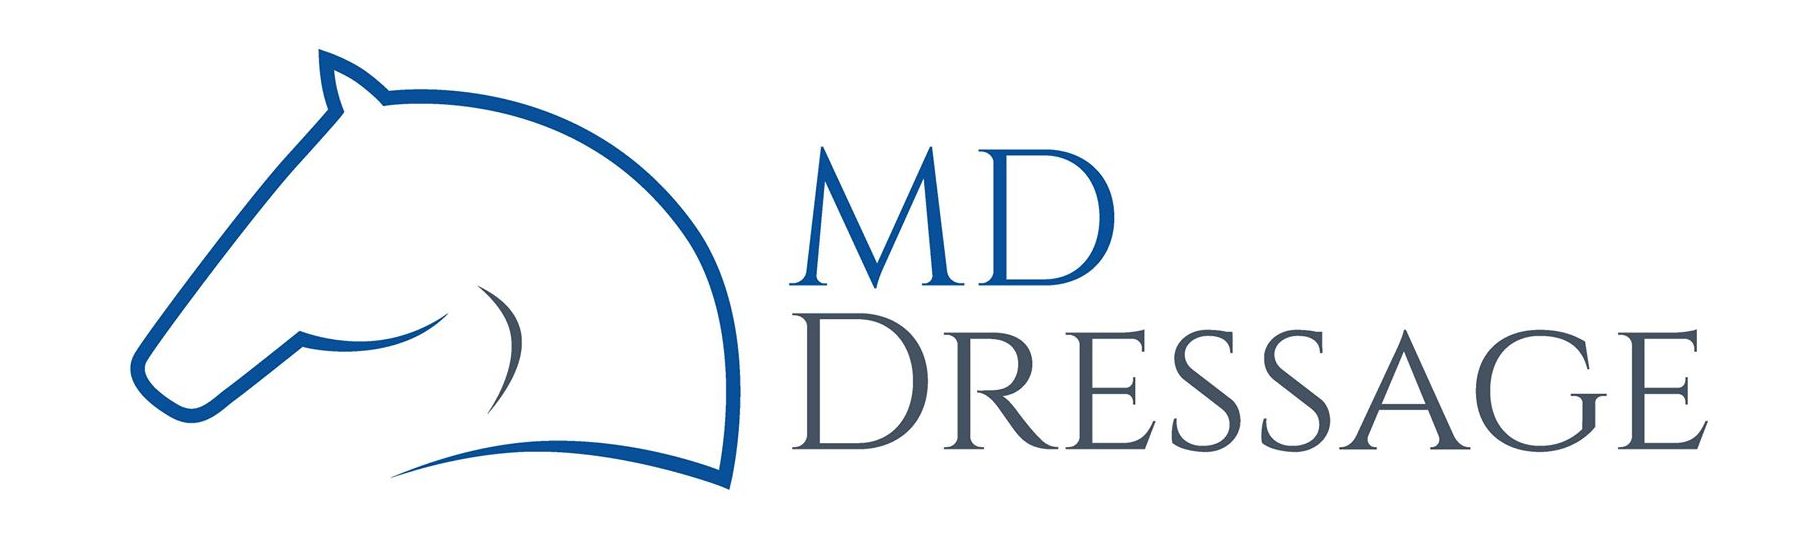 MD Dressage – Cours de dressage de chevaux privés